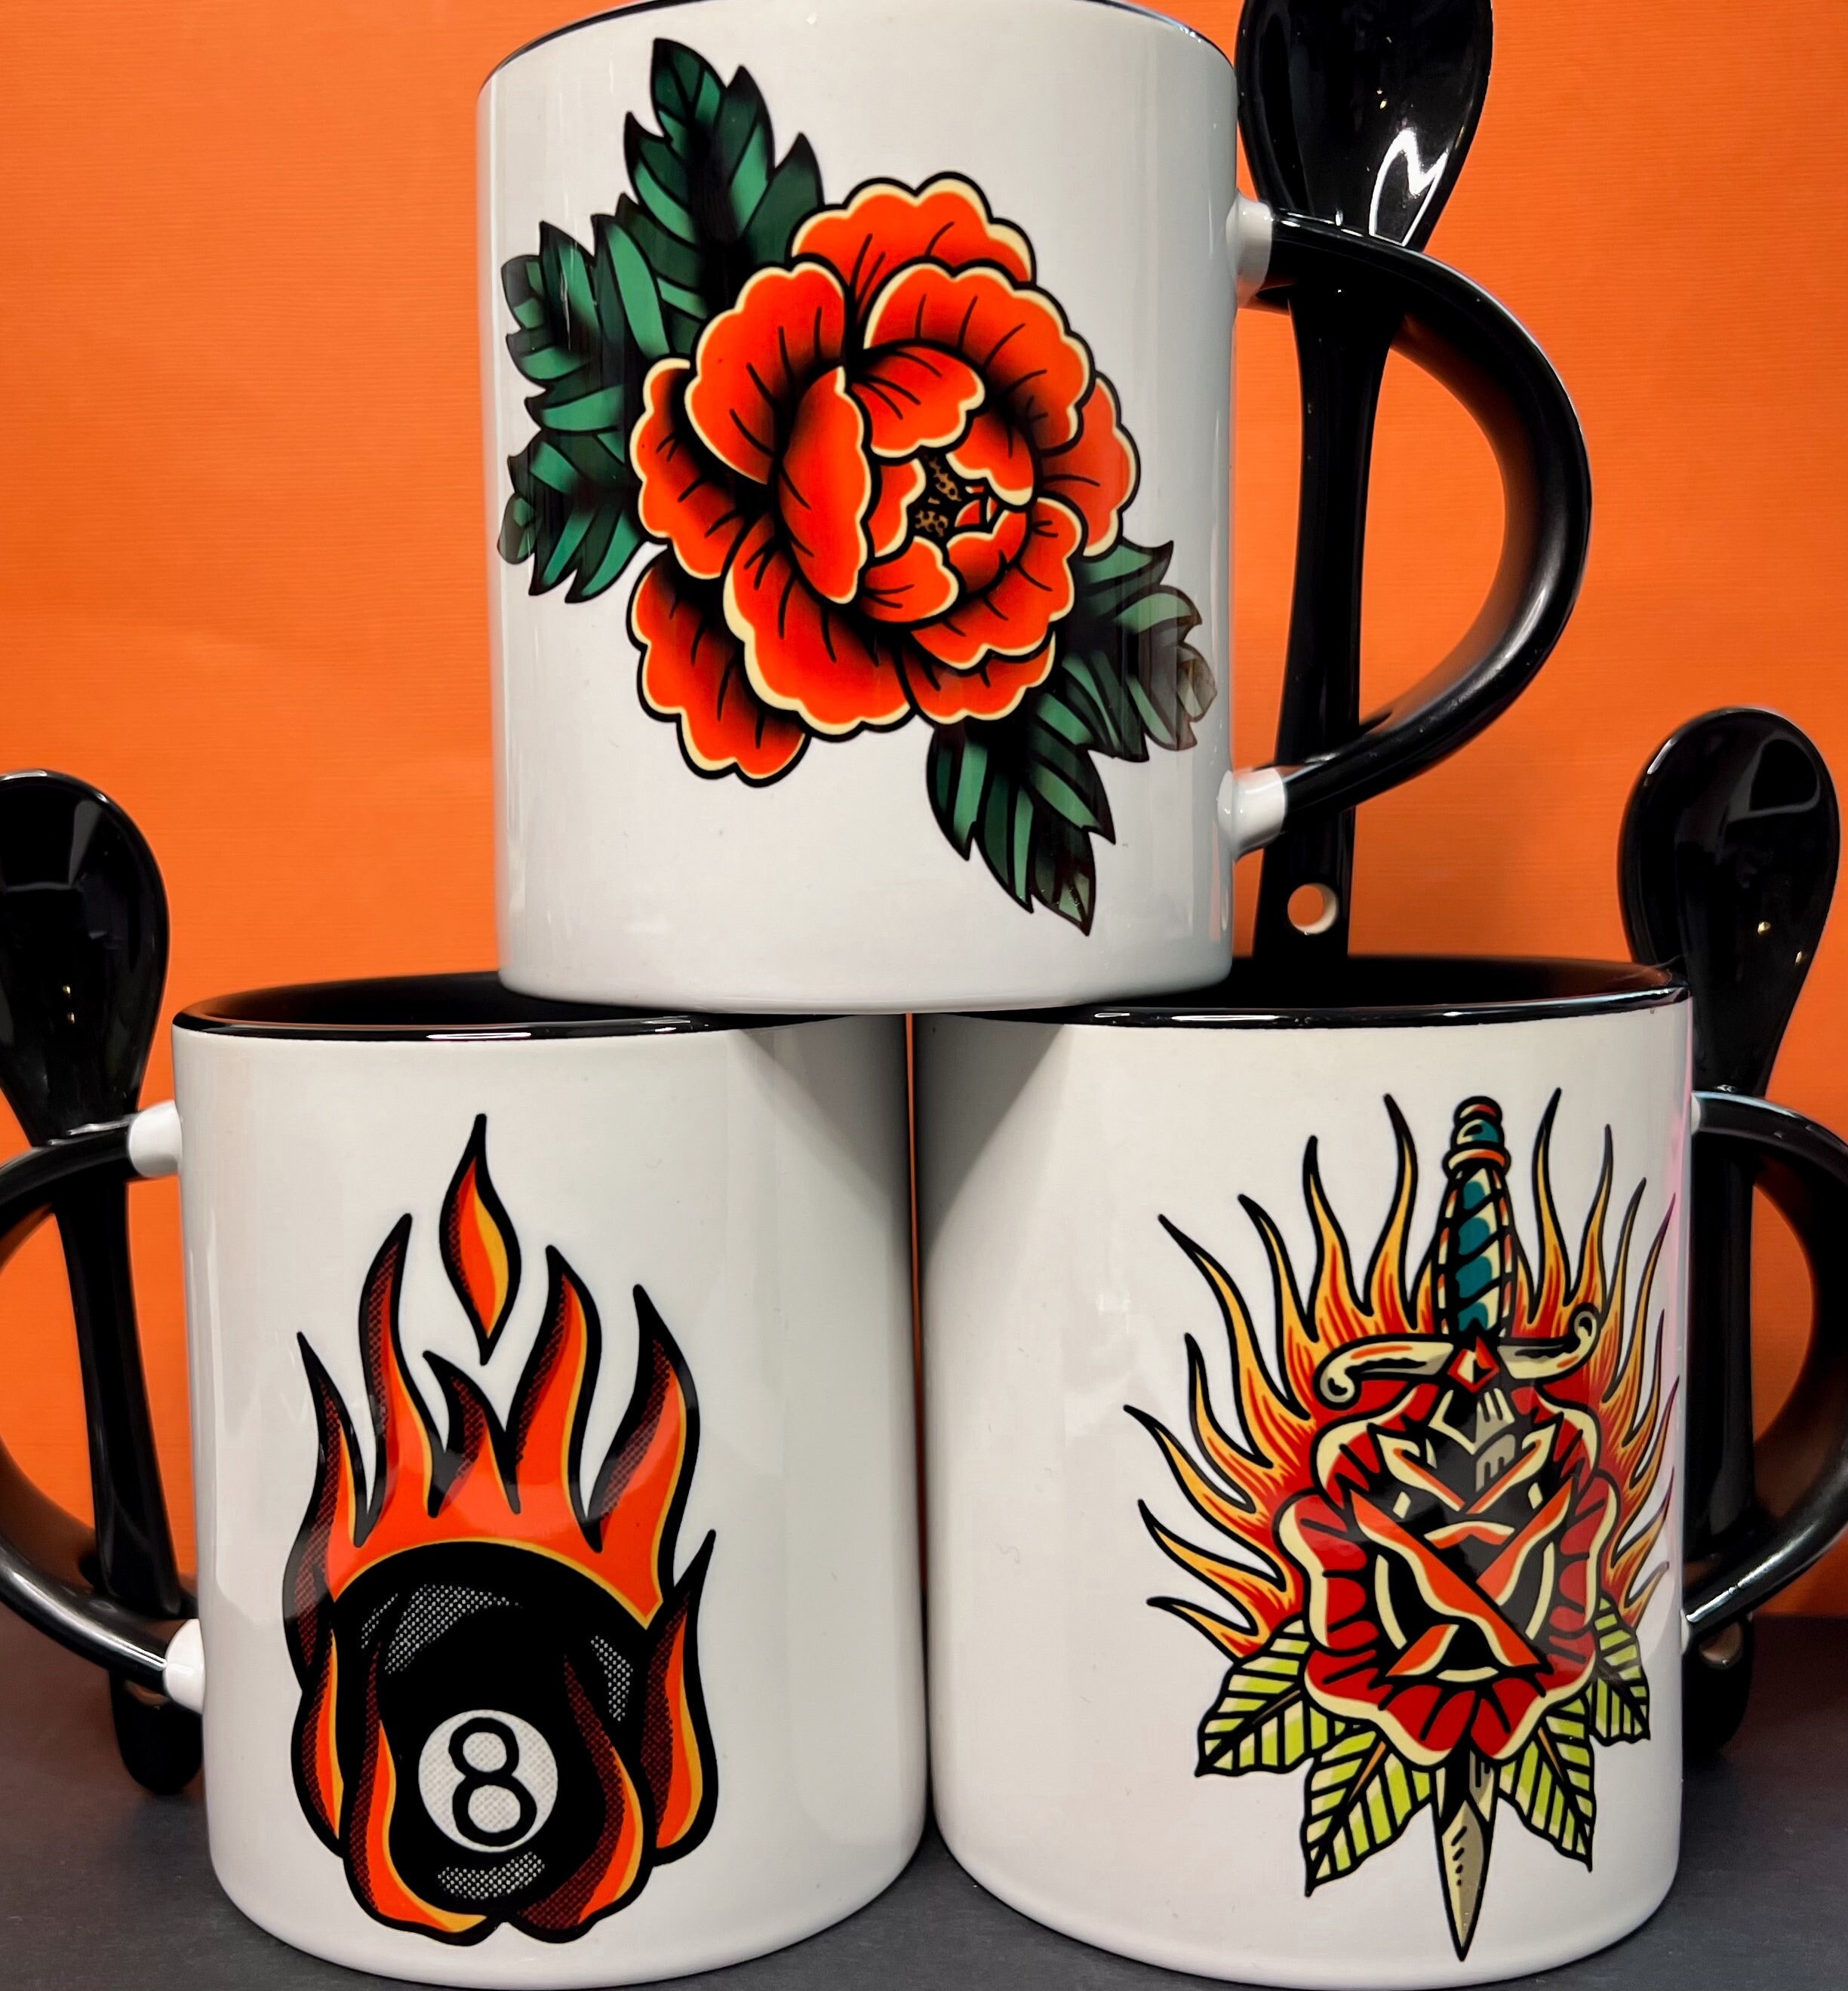  Best Tattoo Artist Women Men Gift T-Shirt  Artists Gift Ink  inker Forever Art Mug Cup Cups Mugs : Home & Kitchen